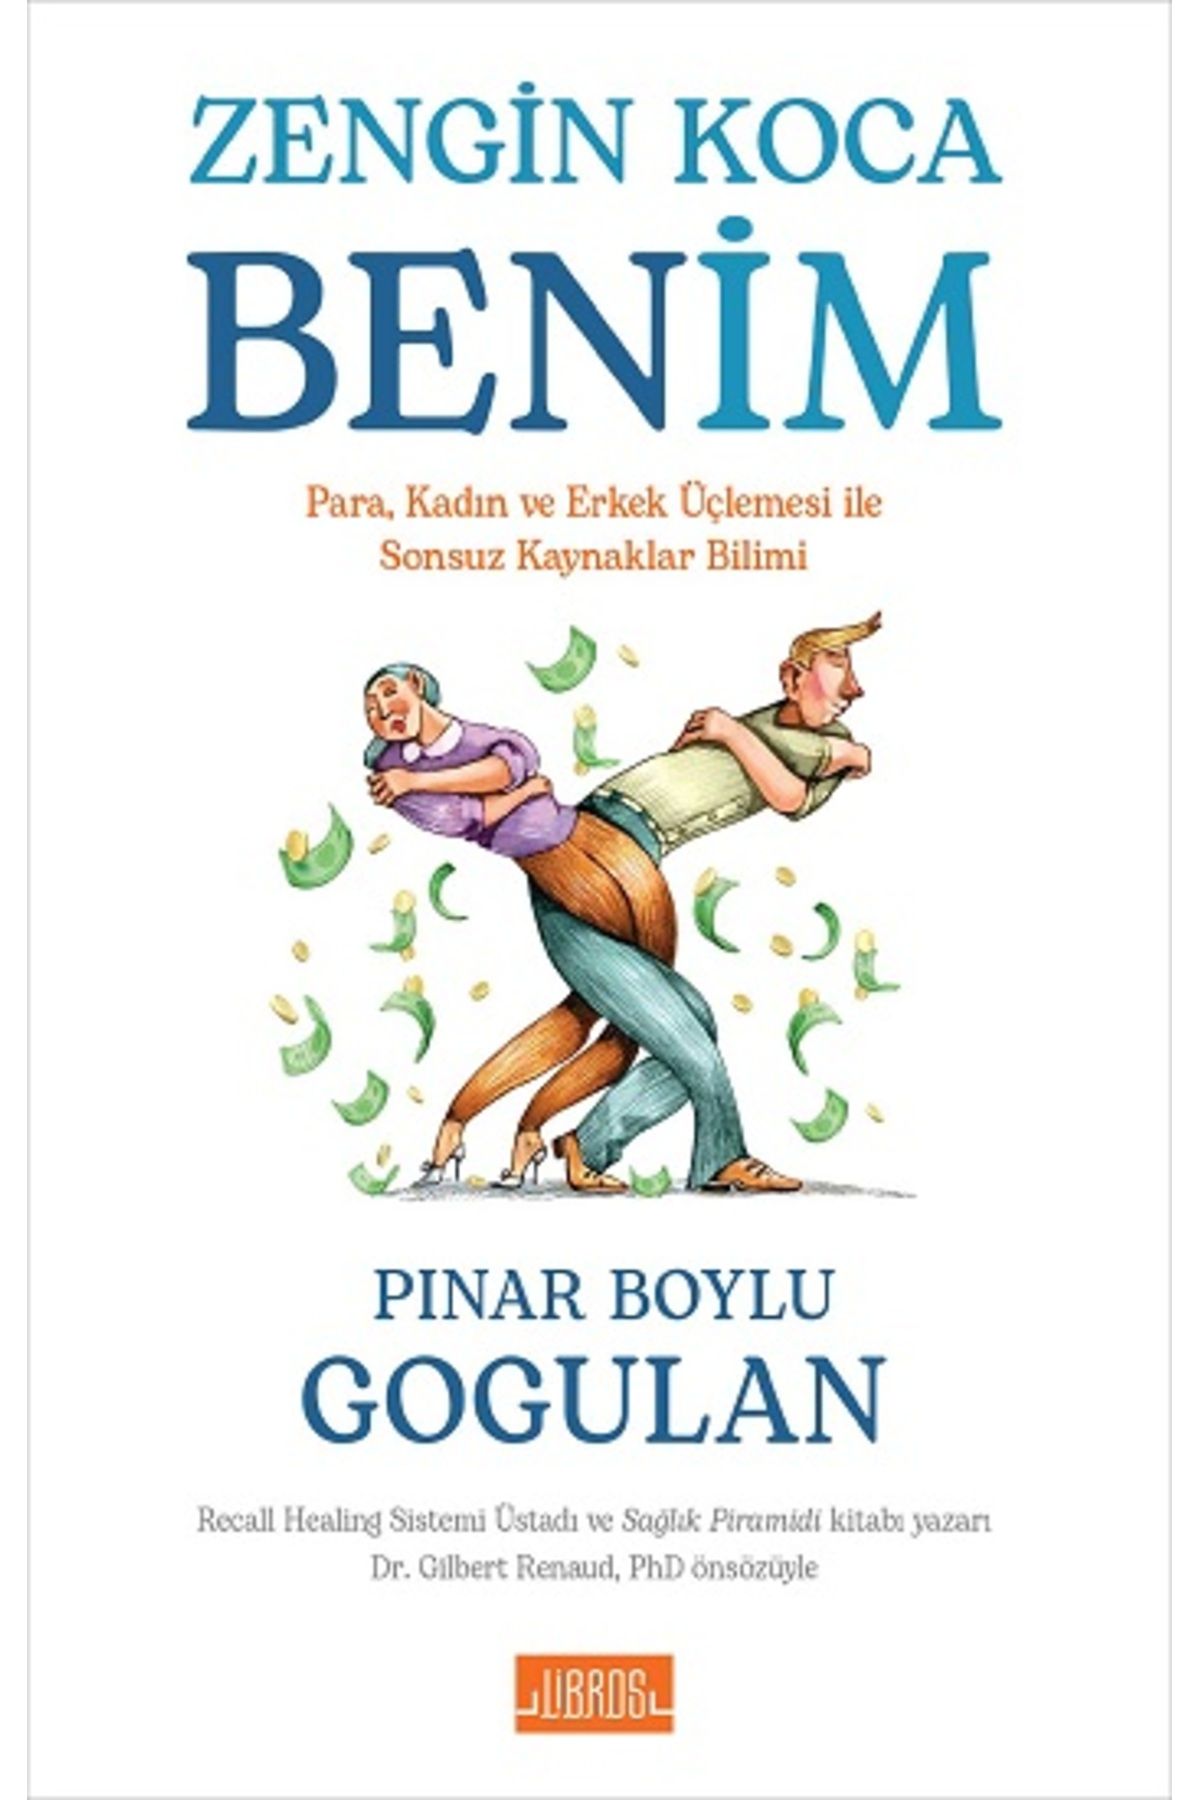 Libros Yayınları Zengin Koca Benim kitabı - Pınar Boylu Gogulan - Libros Yayınları